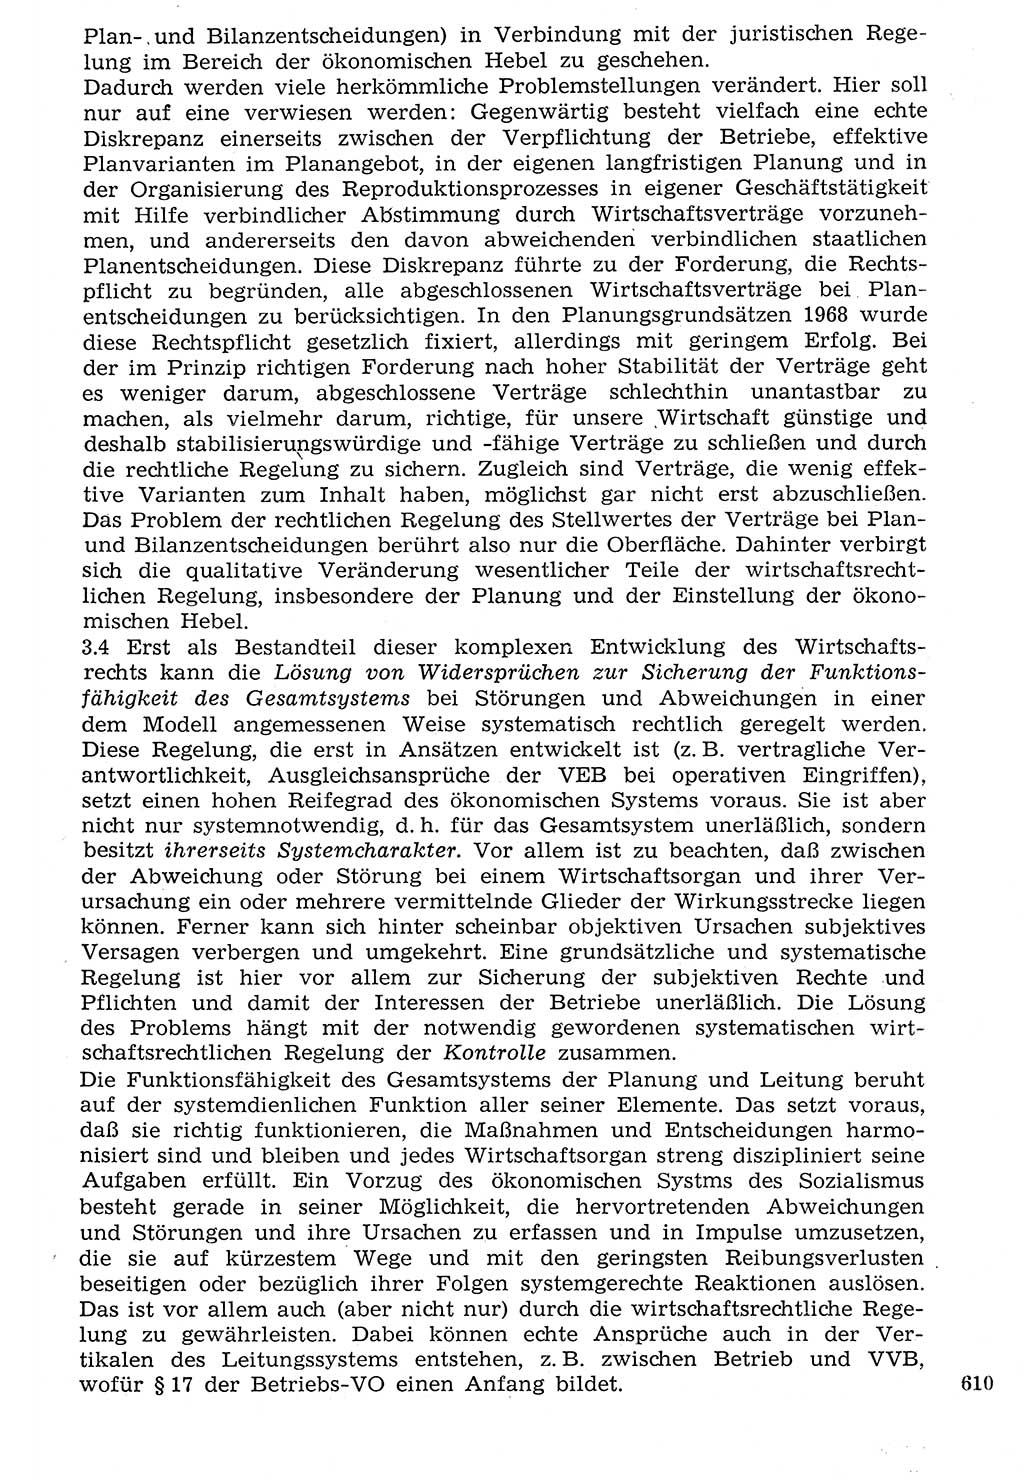 Staat und Recht (StuR), 17. Jahrgang [Deutsche Demokratische Republik (DDR)] 1968, Seite 610 (StuR DDR 1968, S. 610)